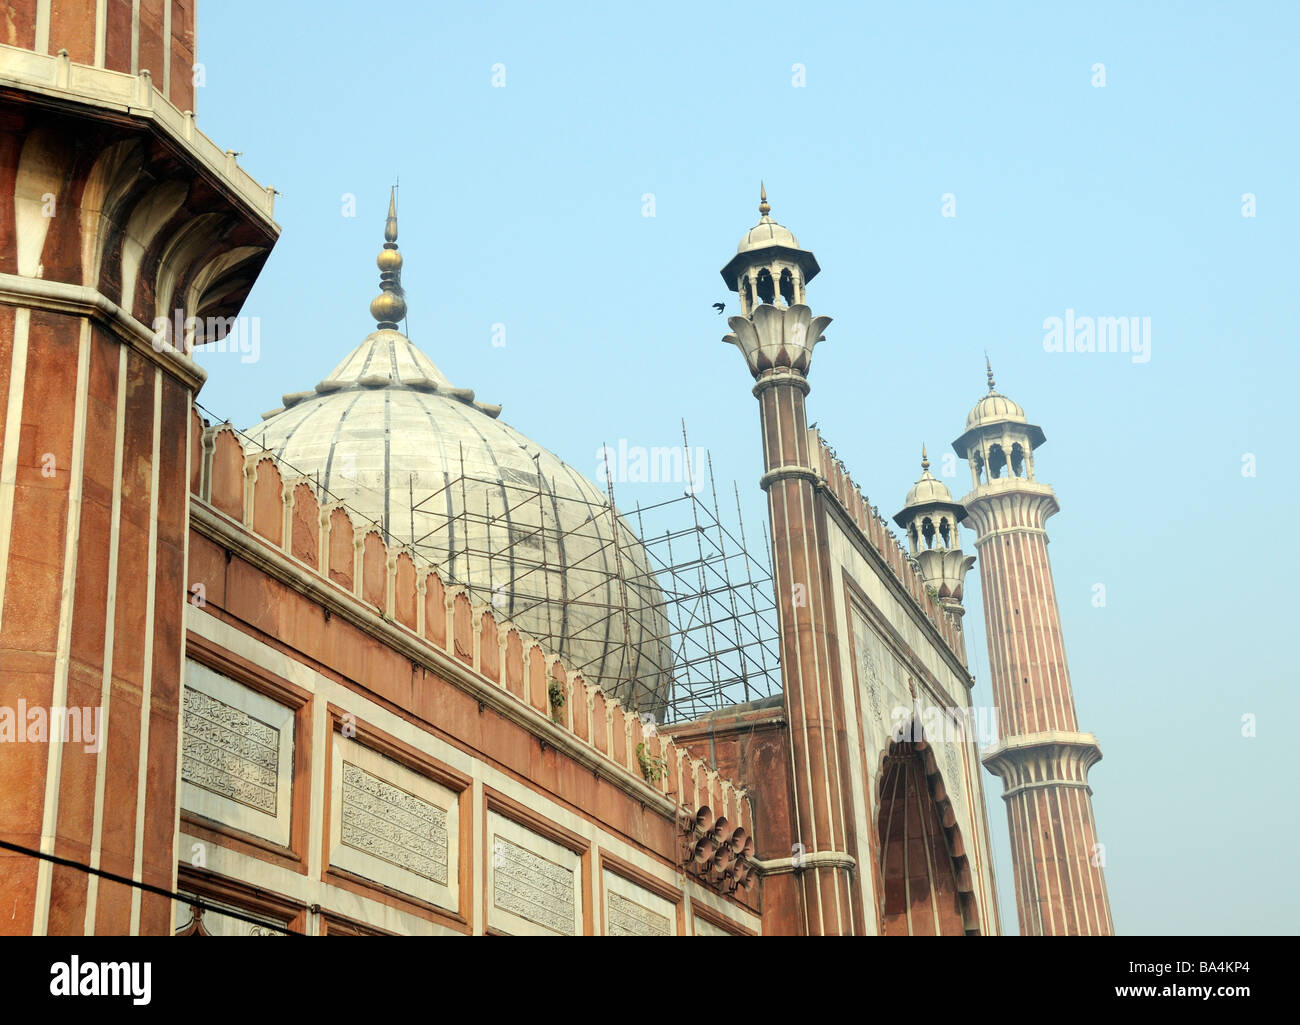 Ingresso al grande cortile di Jami Masjid moschea. Il marmo e la cupola di pietra arenaria, torri e arco può essere visto. Foto Stock